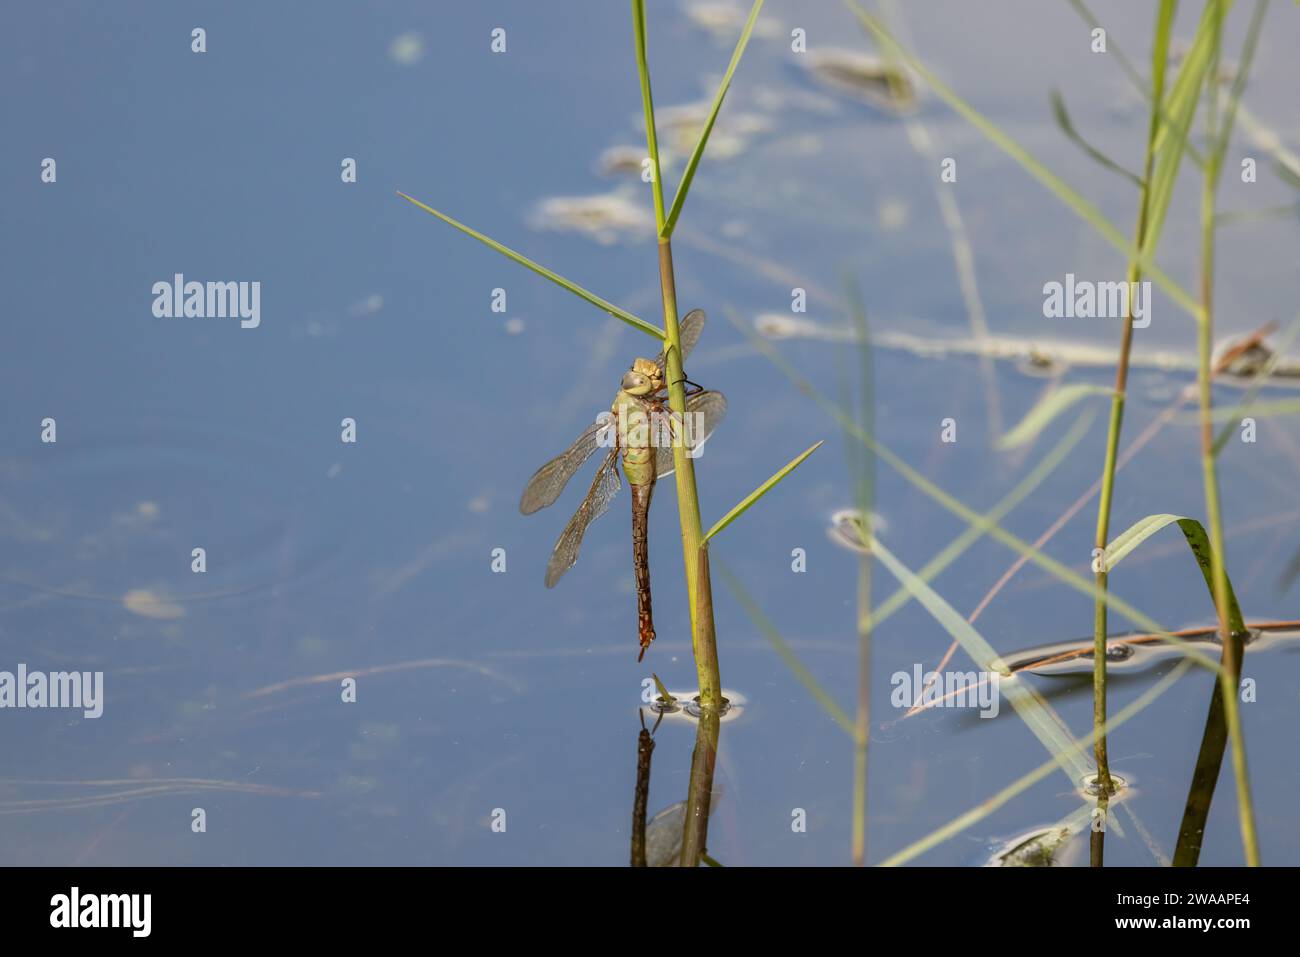 Eine gewöhnliche grüne Därner-Libelle, die sich an einen Grashalm greift, nachdem sie sich aus dem Wasser gezogen hat. Stockfoto